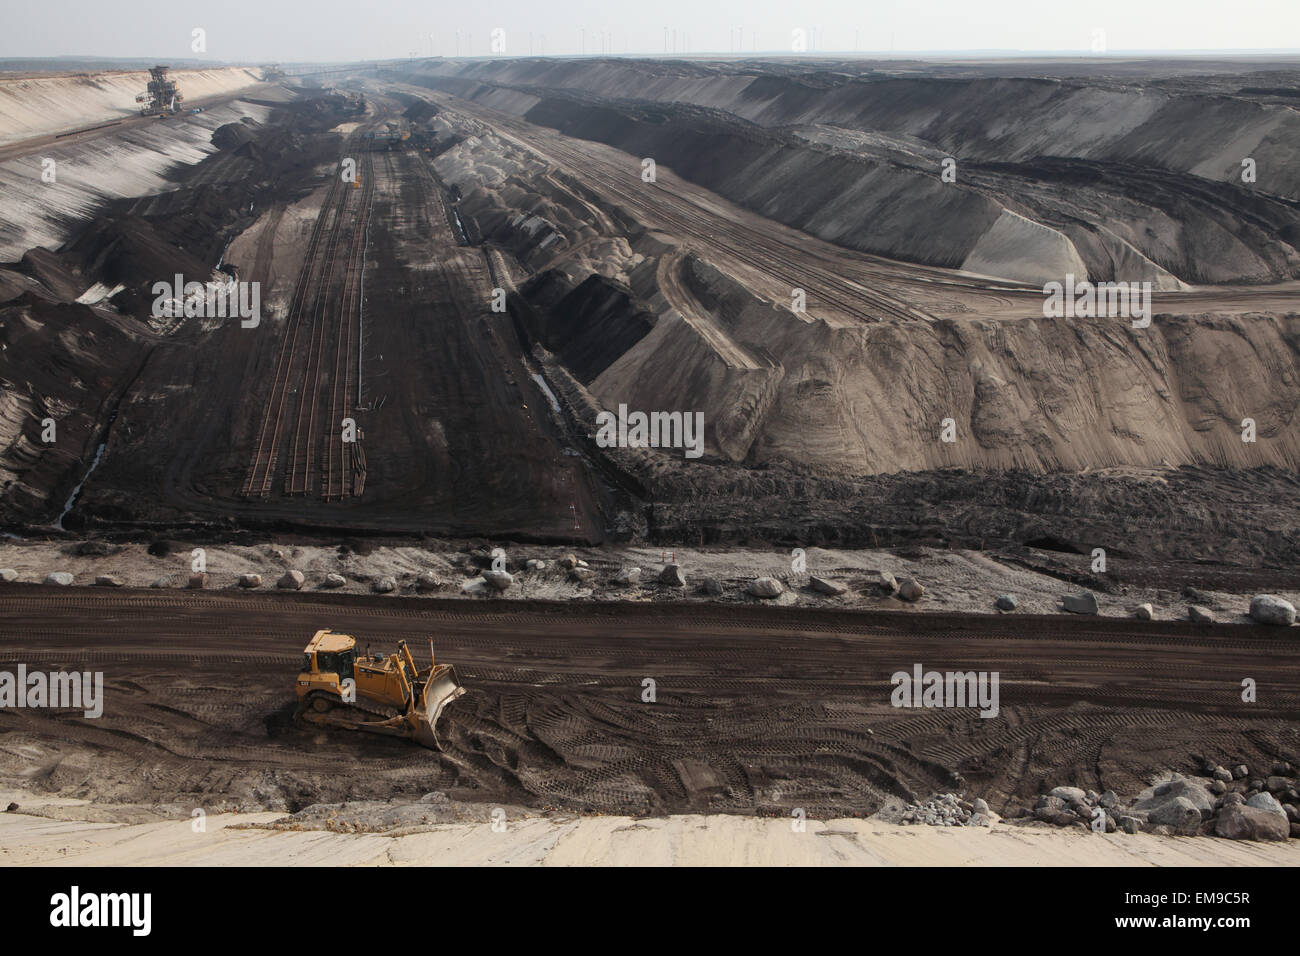 Tagebau Kohle Bergbau Cottbus-Nord in der Nähe von Cottbus, Niederlausitz, Brandenburg, Deutschland. Riesige Tagebau-Kohle-Bergbau von der Vattenfall Stockfoto